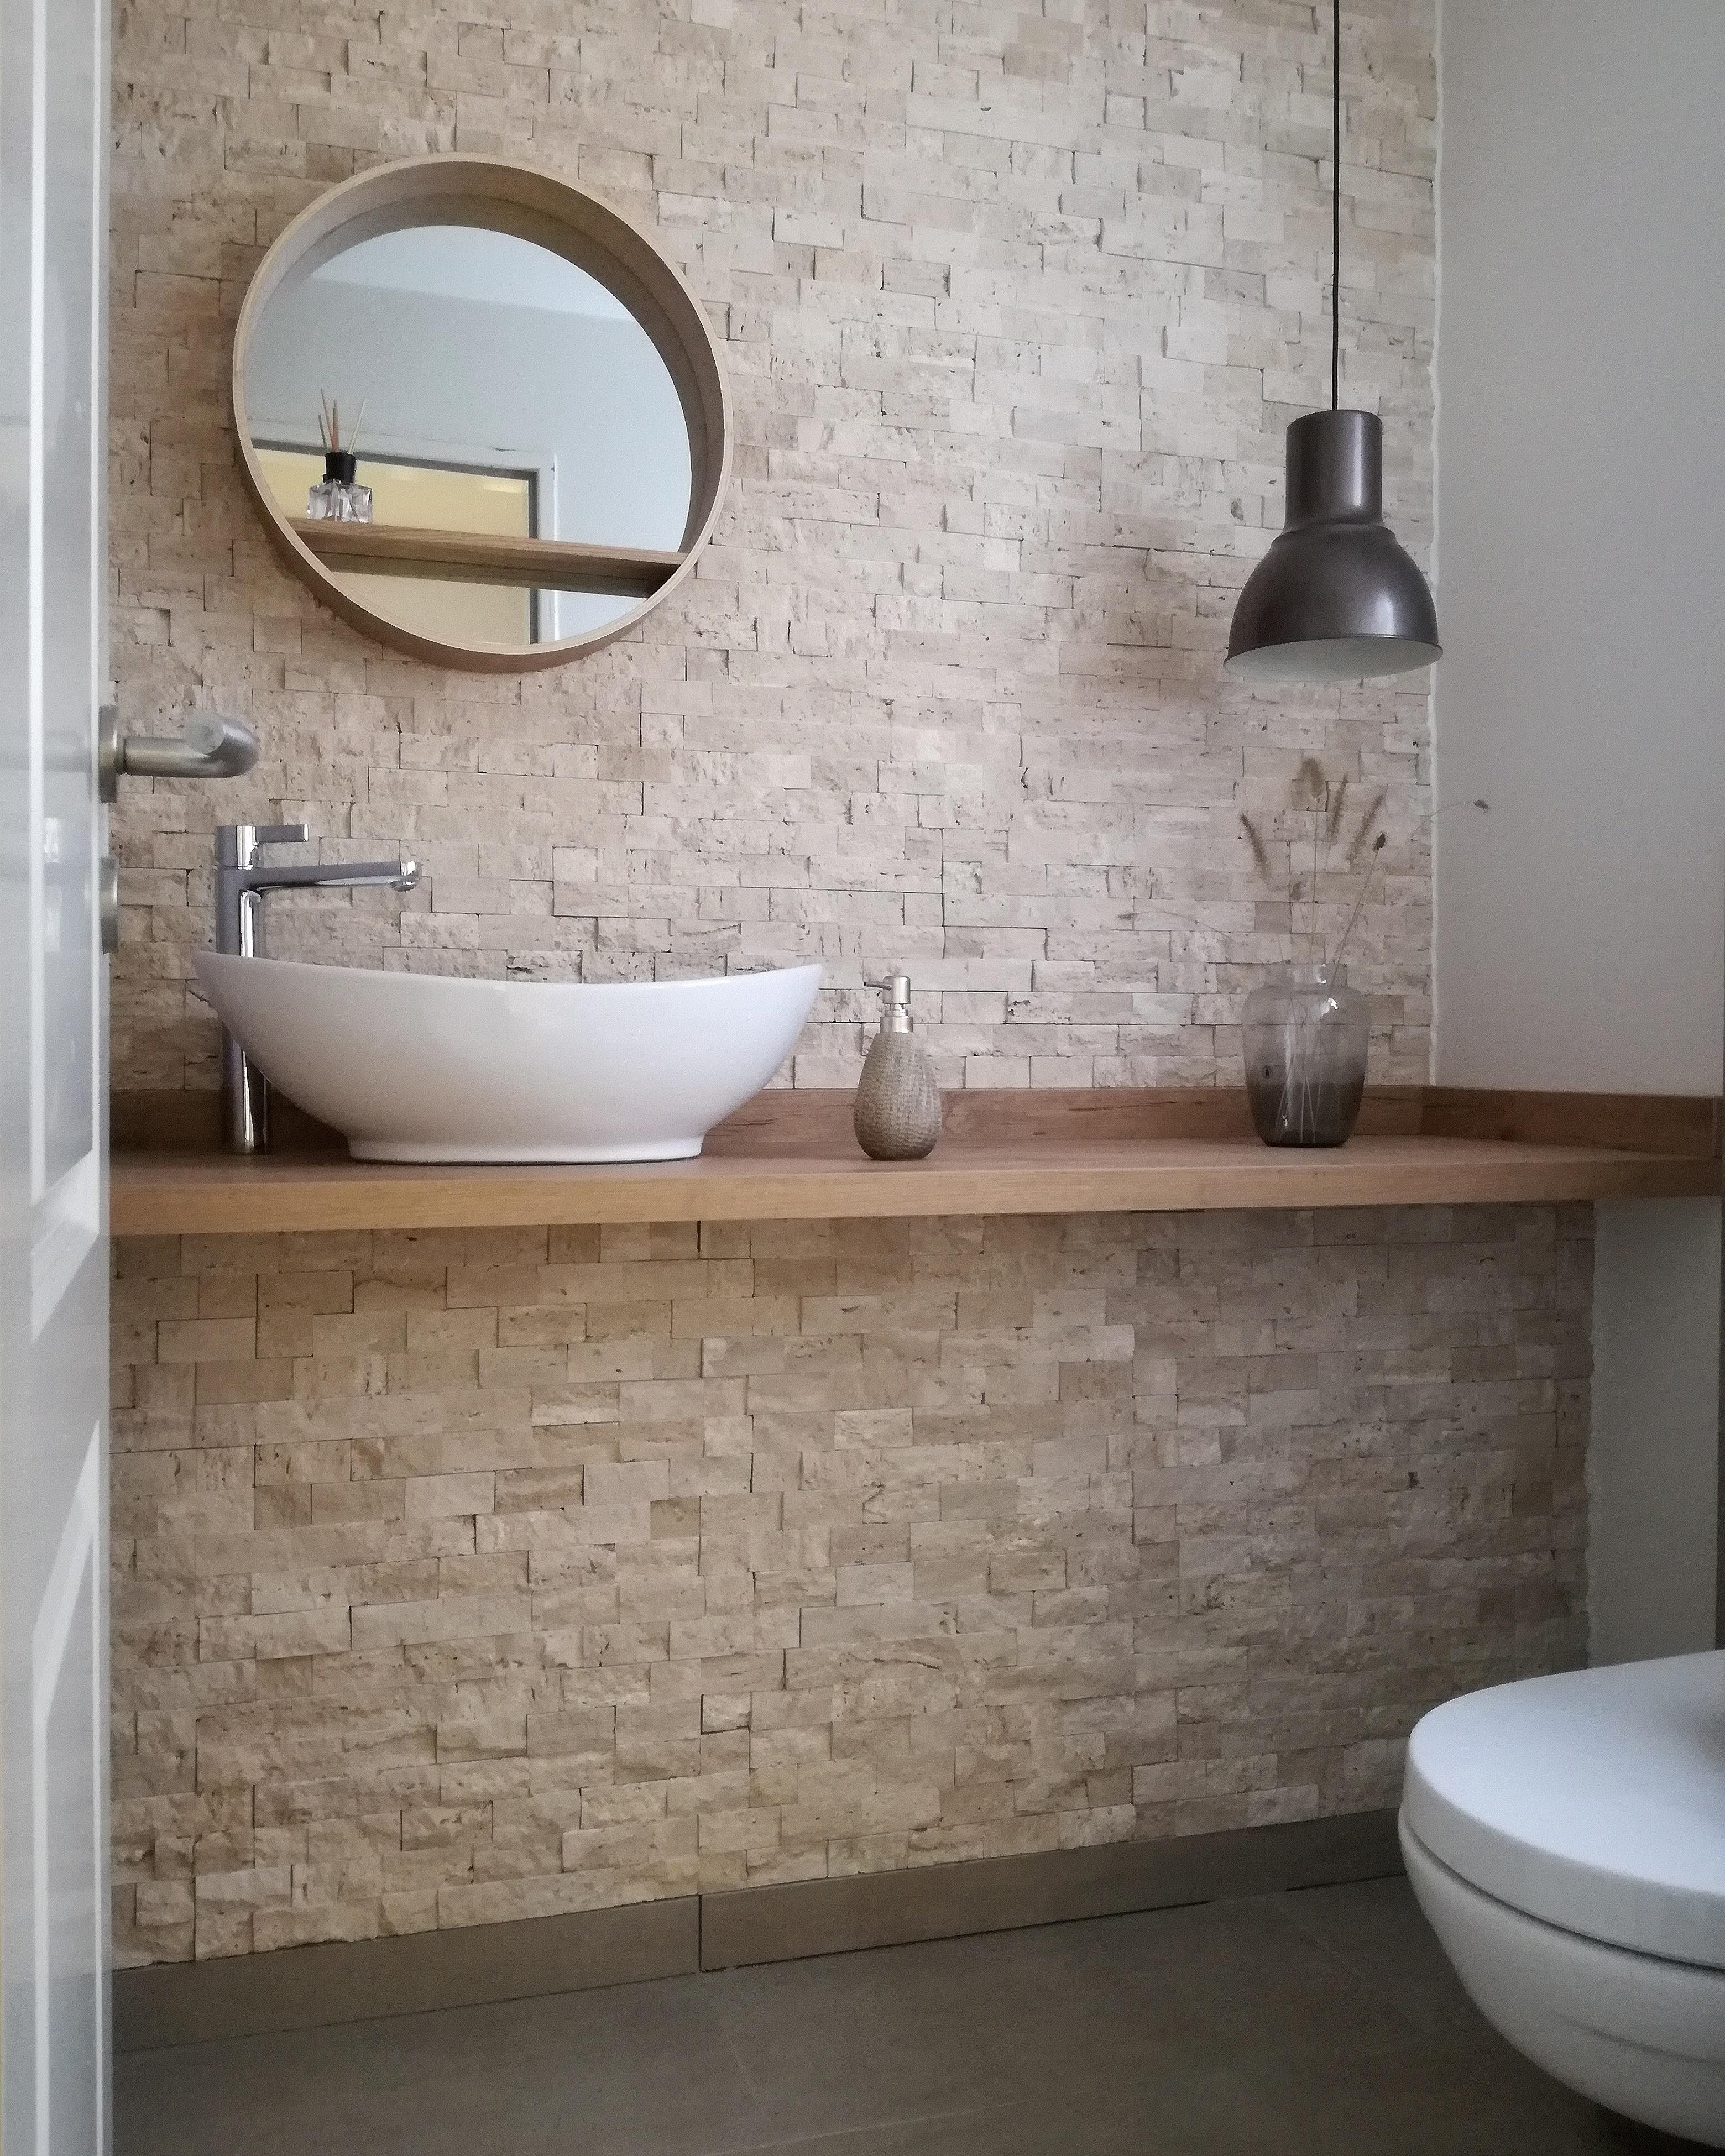 Im #GästeWc haben wir an einer Wand #Naturstein. Der #Waschtisch ist eine Arbeitsplatte in Holzoptik 🖤 #bad #badezimmer